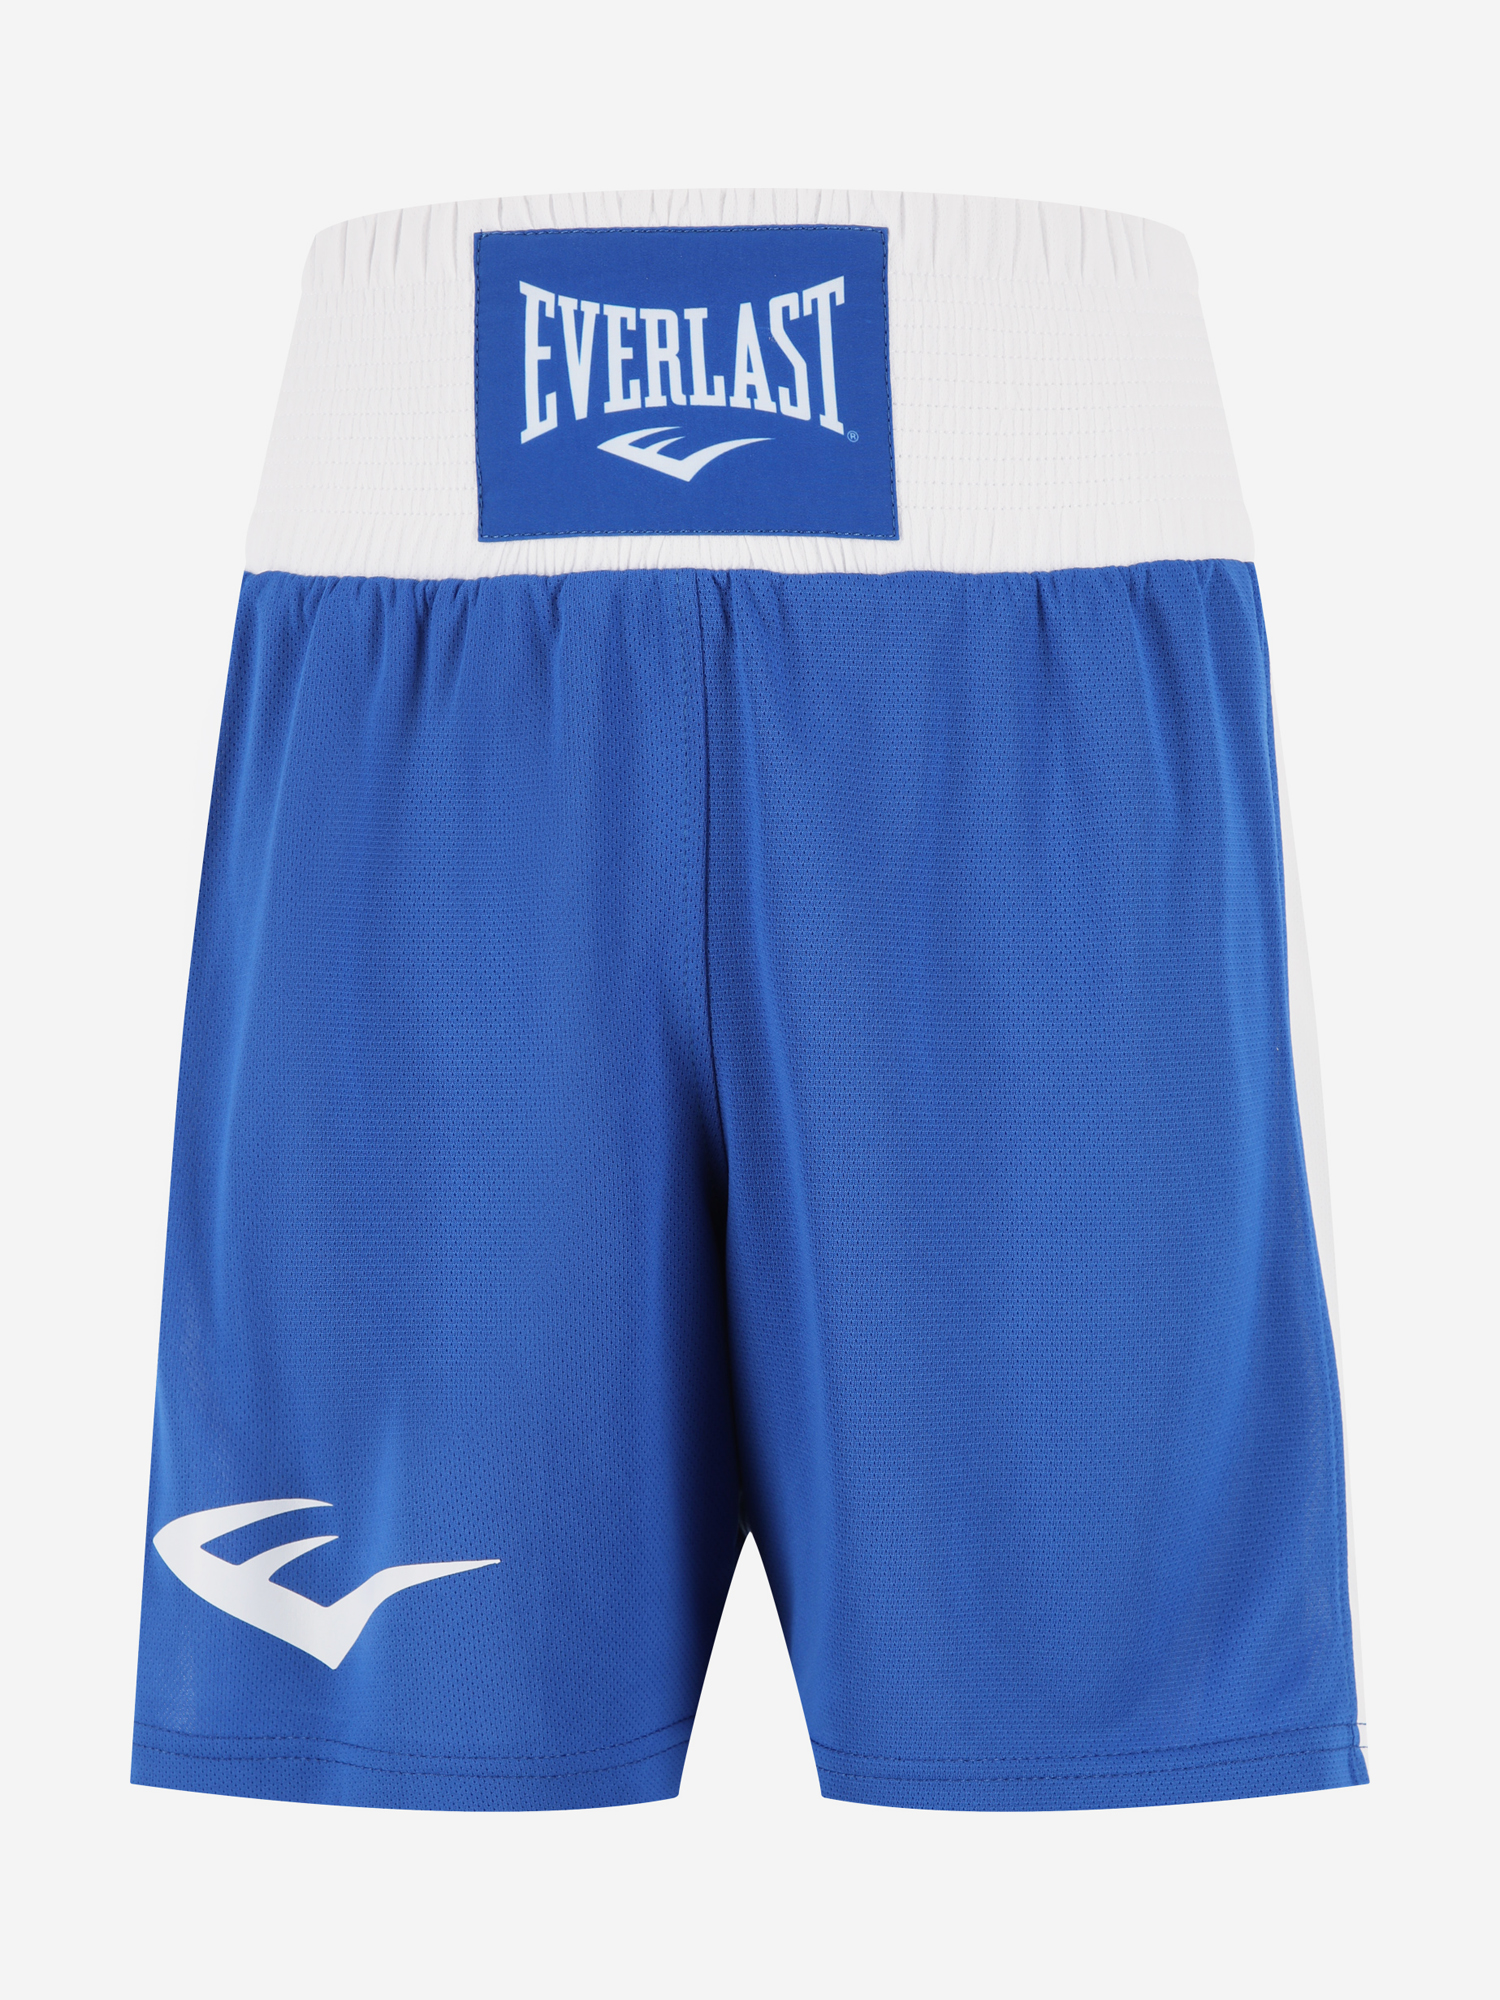 Шорты для бокса детские Everlast Elite, Синий шорты для бокса everlast shorts elite синий